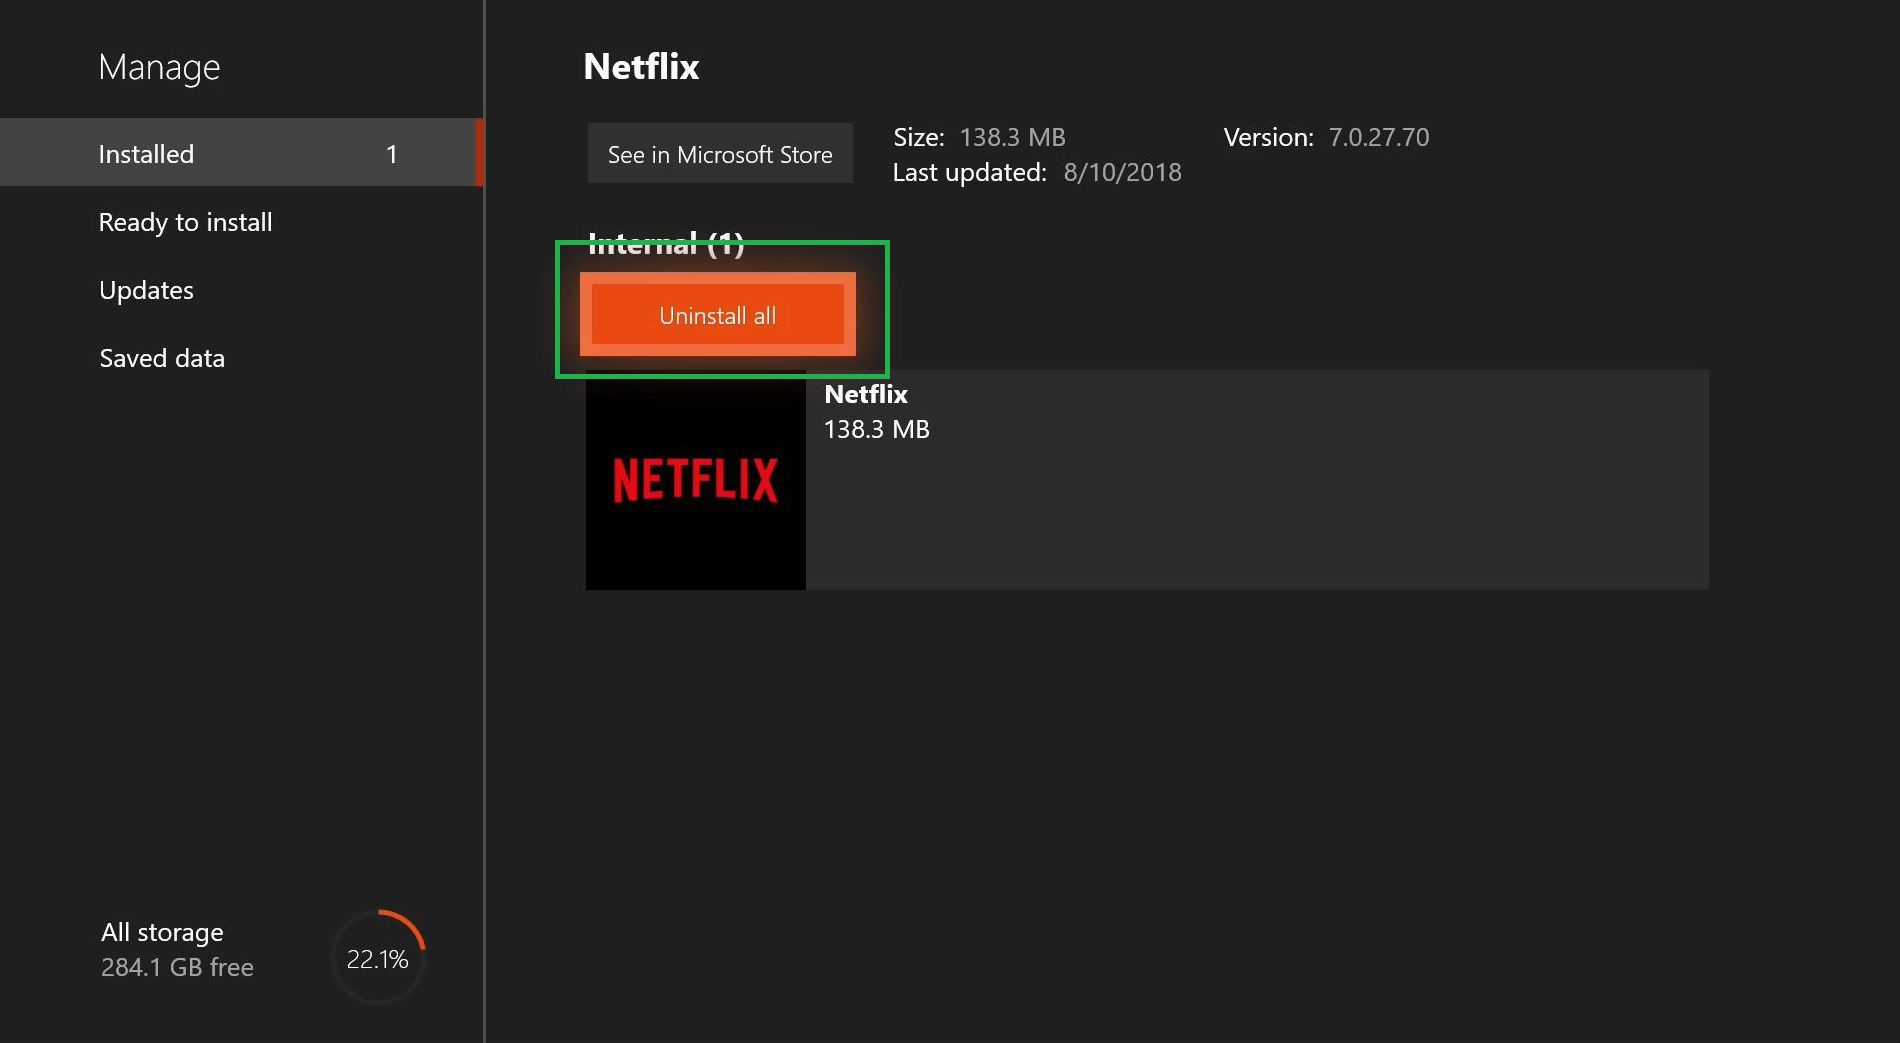 Cómo reparar: Código de error de Netflix UI-113 - Tutoriales de boletines  de Windows